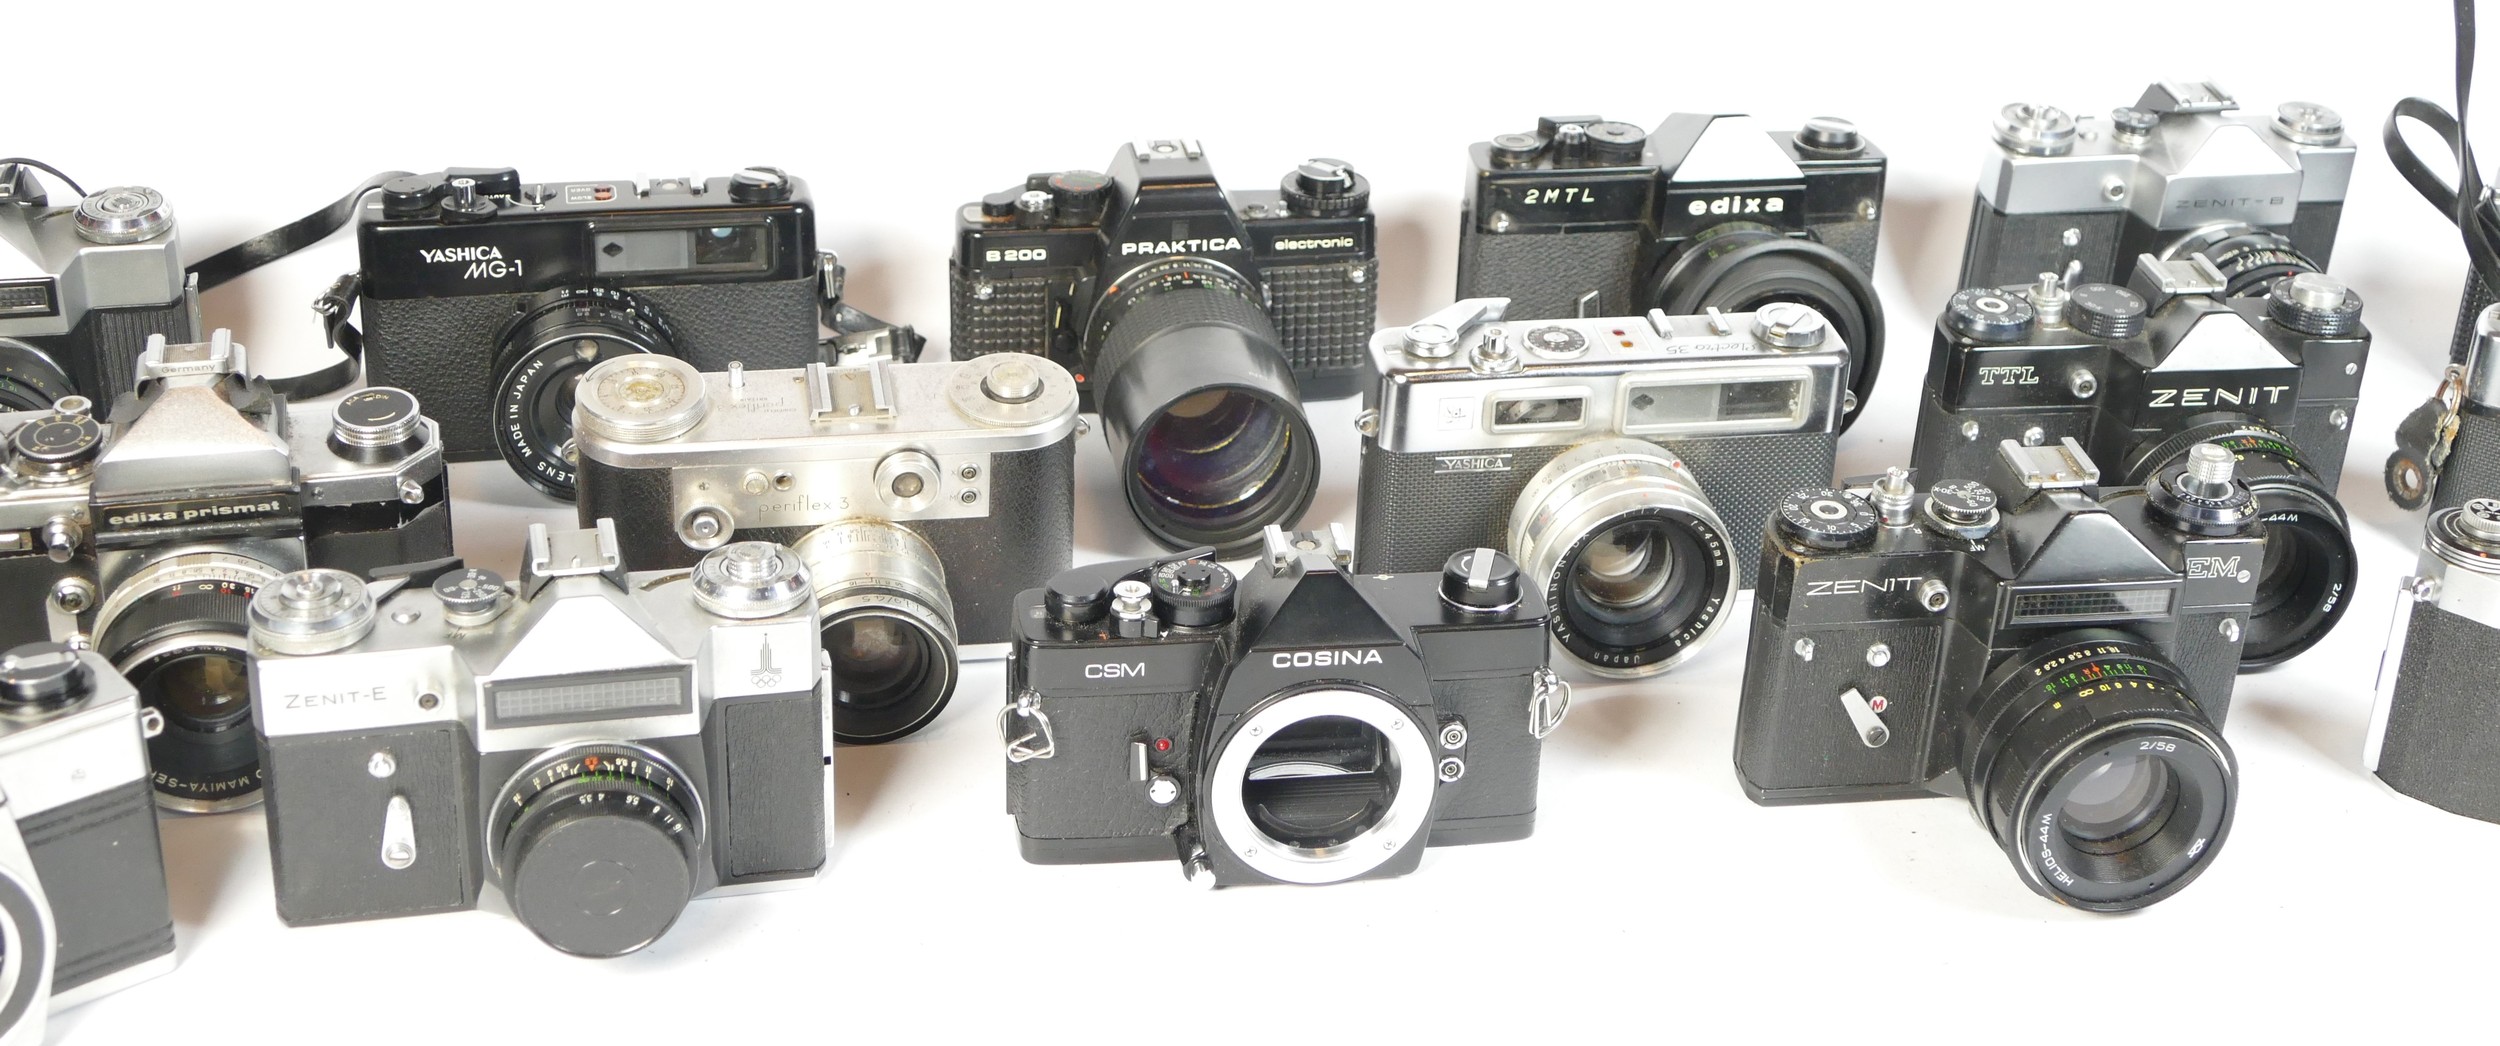 Eighteen SLR vintage film cameras to include a Praktica MTL5B, a Zenit EM, a Praktica B200 and a - Image 2 of 2